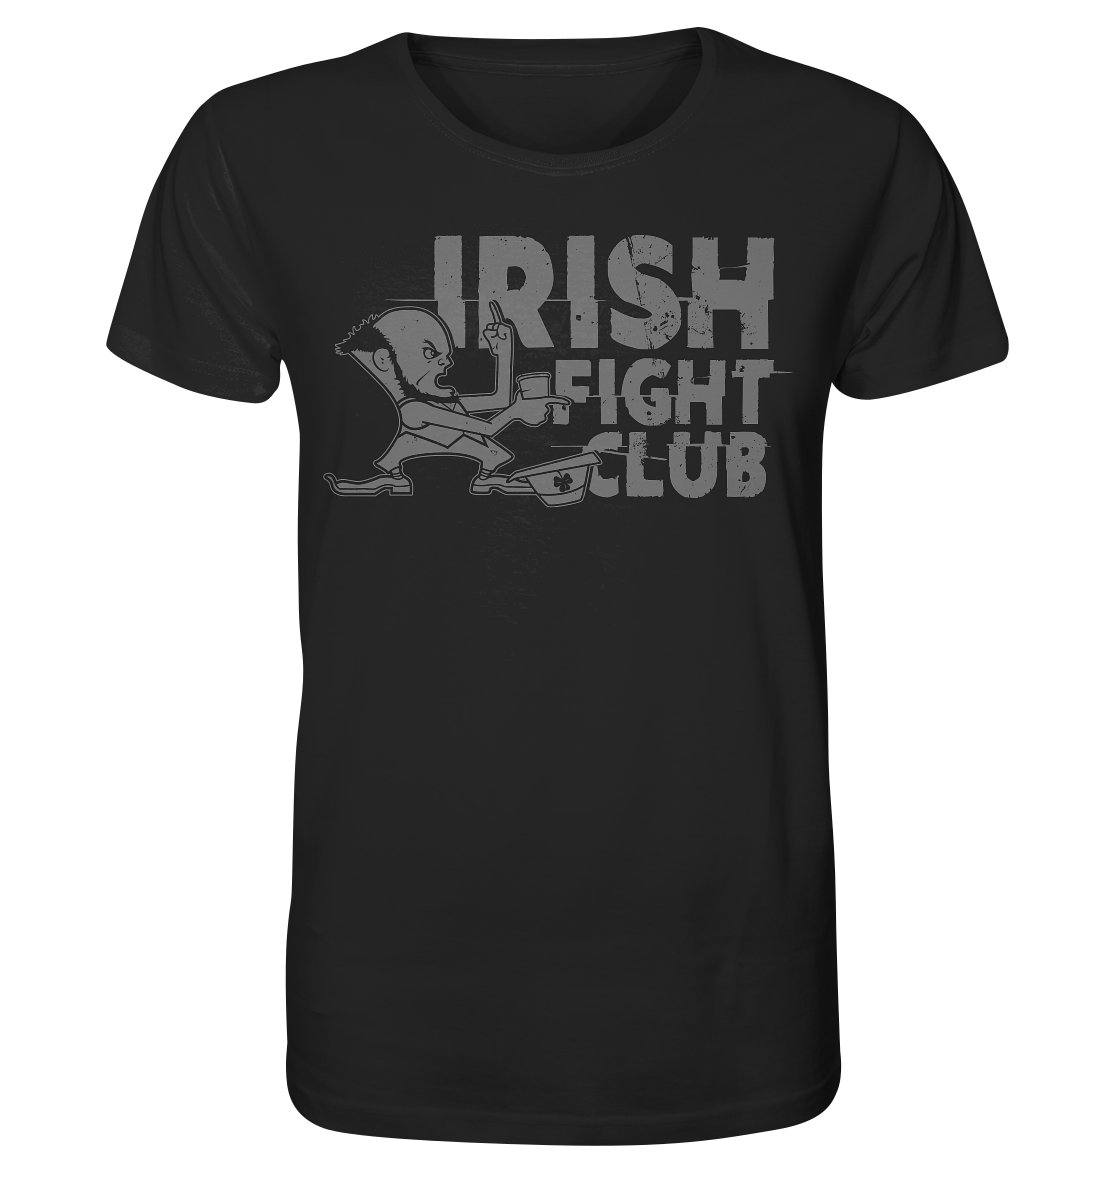 Irish Fight Club - Organic Shirt